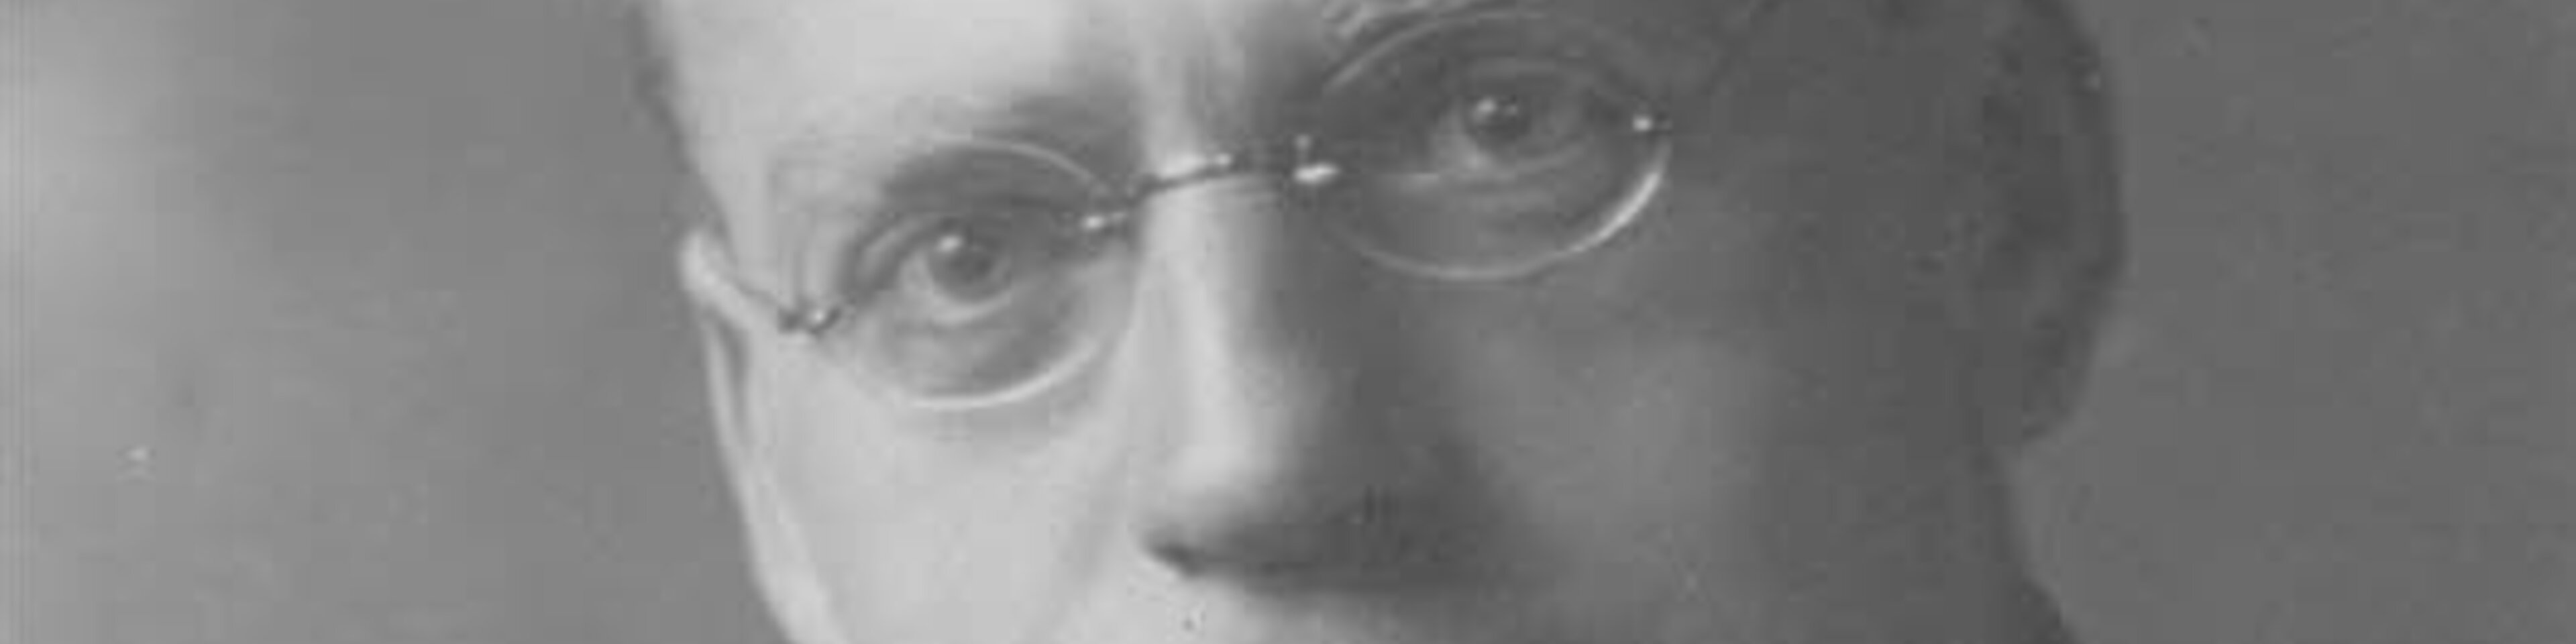 Josef Groß, Caritasdirektor 1924-1927, Portraitfoto, ca. 1920. | © (Fotograf unbekannt, Archiv des DiCV München und Freising e. V., Fotosammlung)